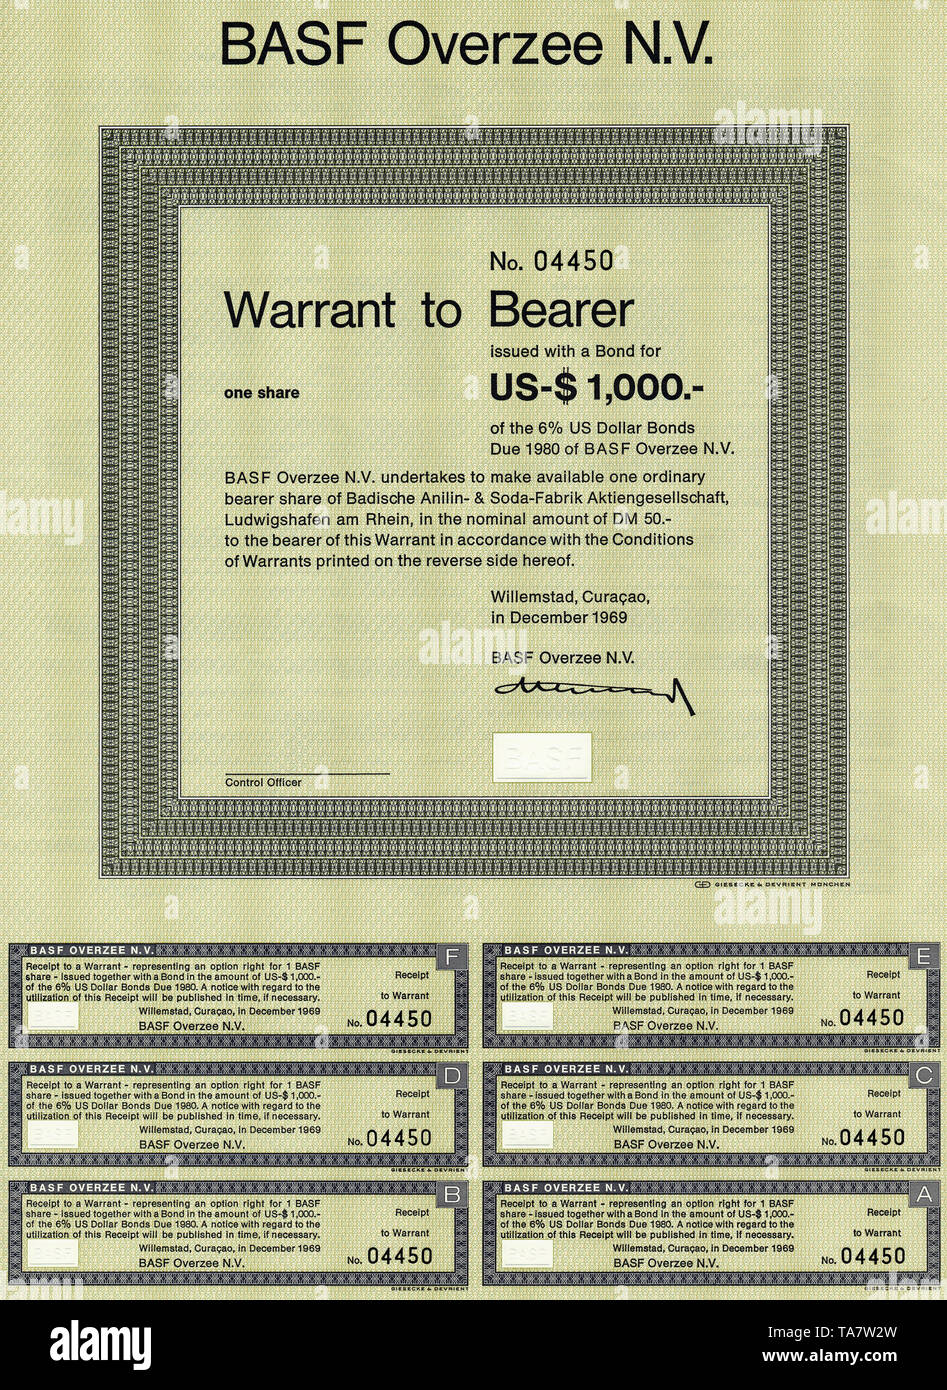 Historic Stock certificato, certificato di titoli al portatore, warrant, Inhaber-Optionsschein für Aktien der BASF Overzee N.V., Willemstad, Curacao, Niederländische Antillen, 1969 Foto Stock